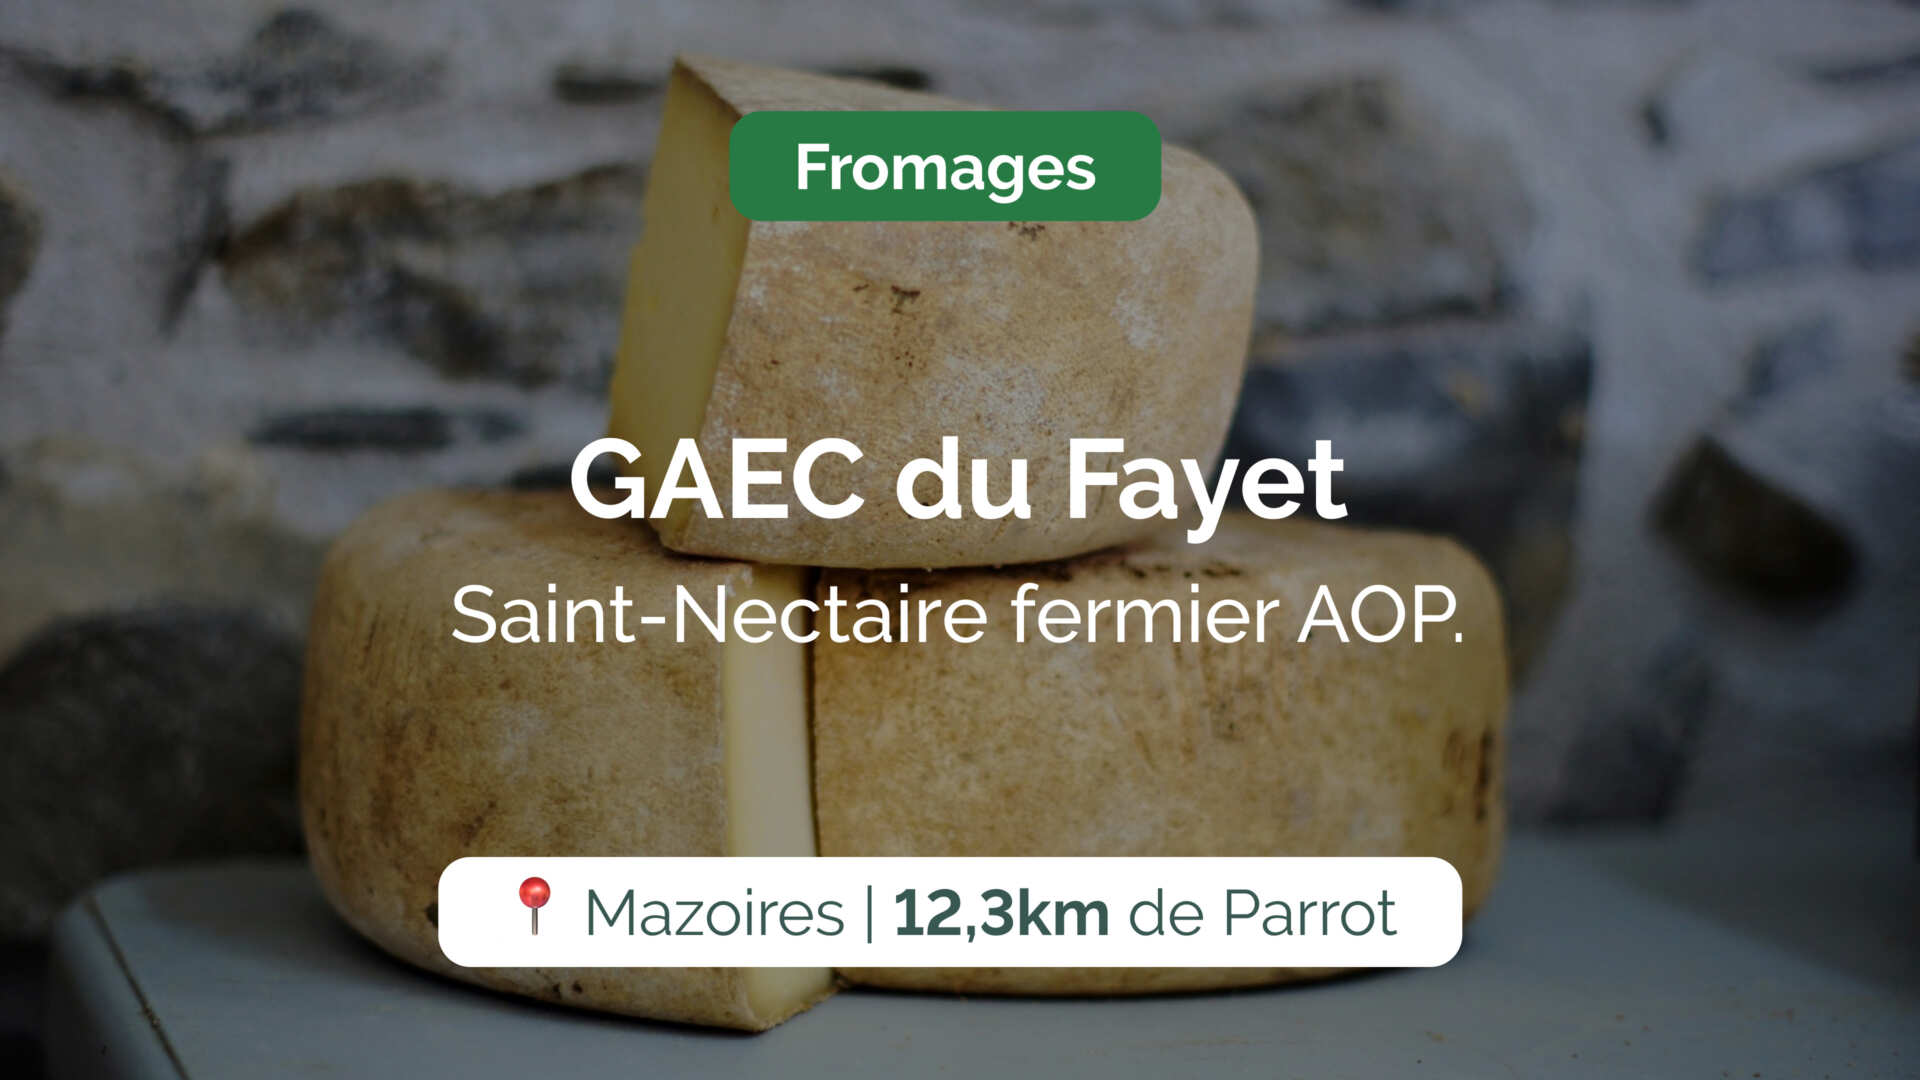 GAEC du Fayet Caro, Jean-Luc et Mathieu, producteurs et affineurs, vous proposent leurs fromages de Saint-Nectaire fermier AOP. Vente à la ferme.